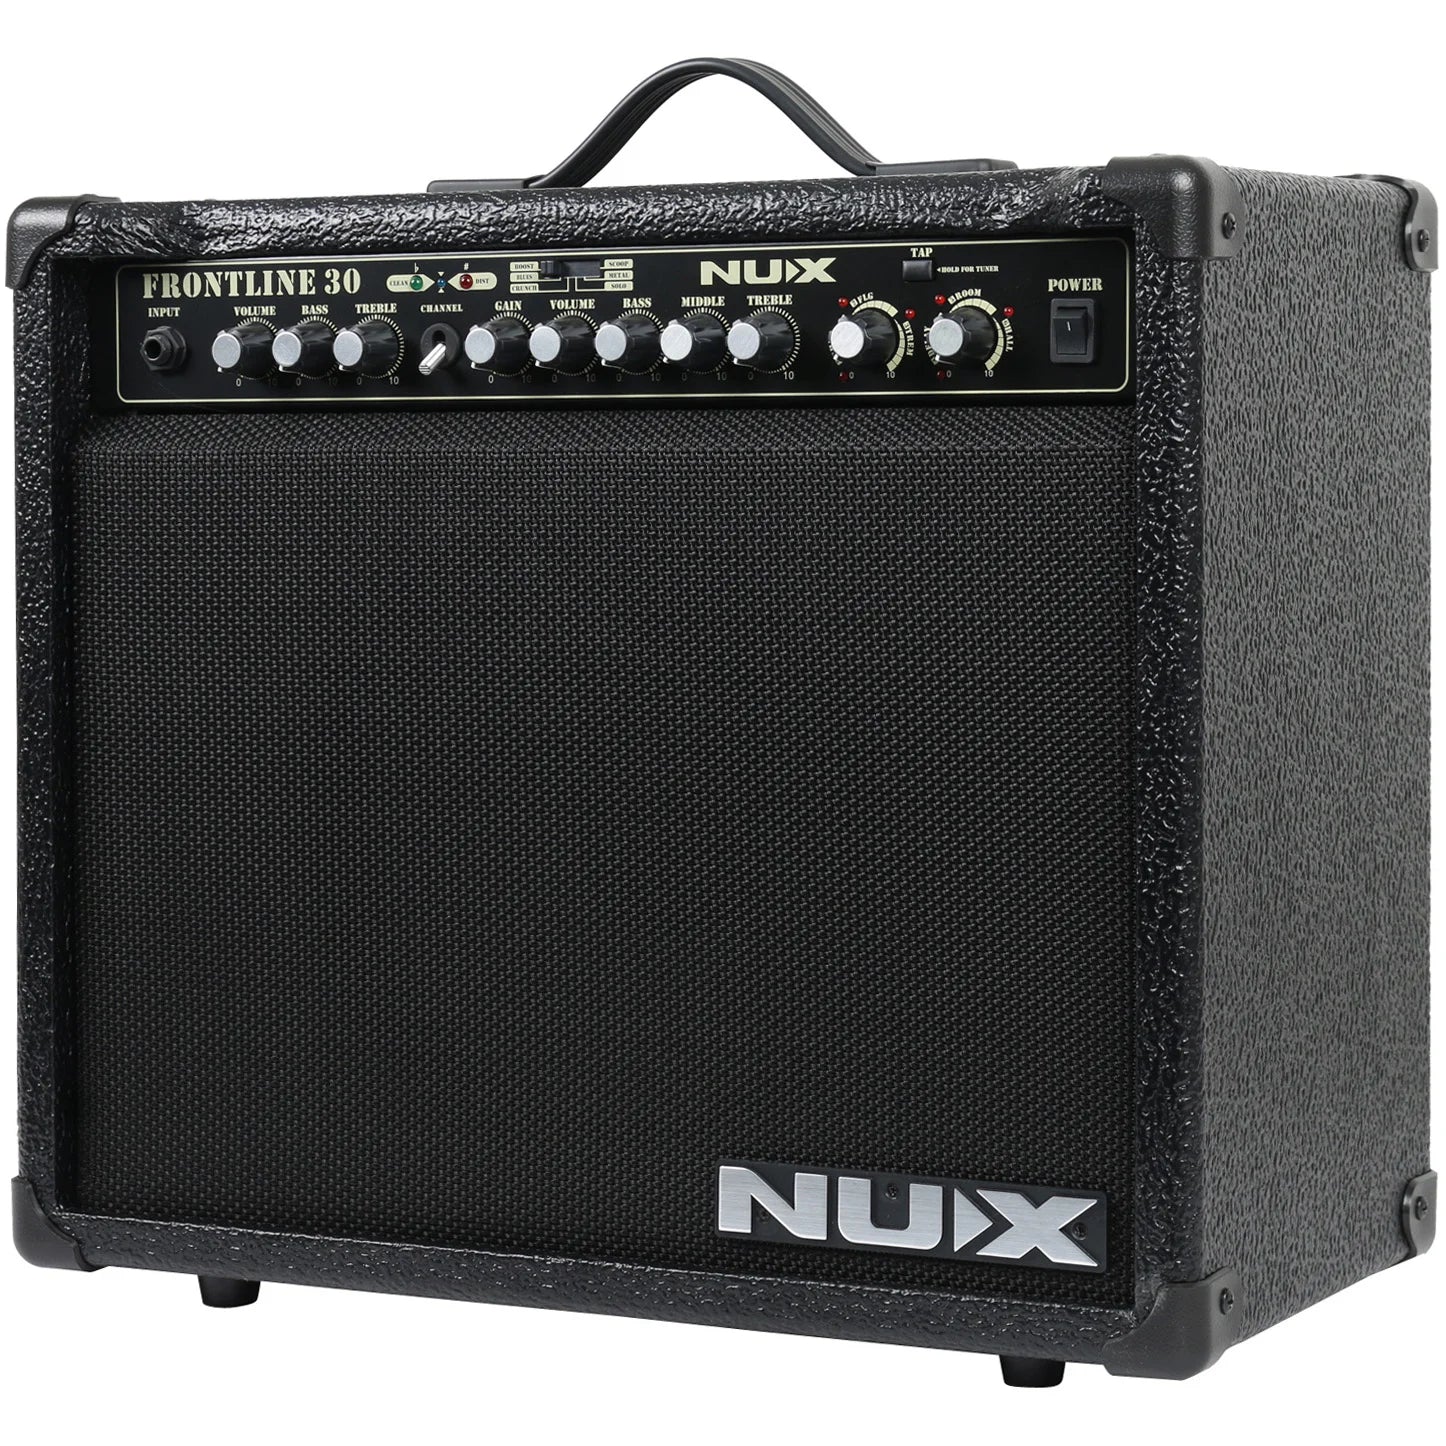 Nux Frontline 30 Amplifier